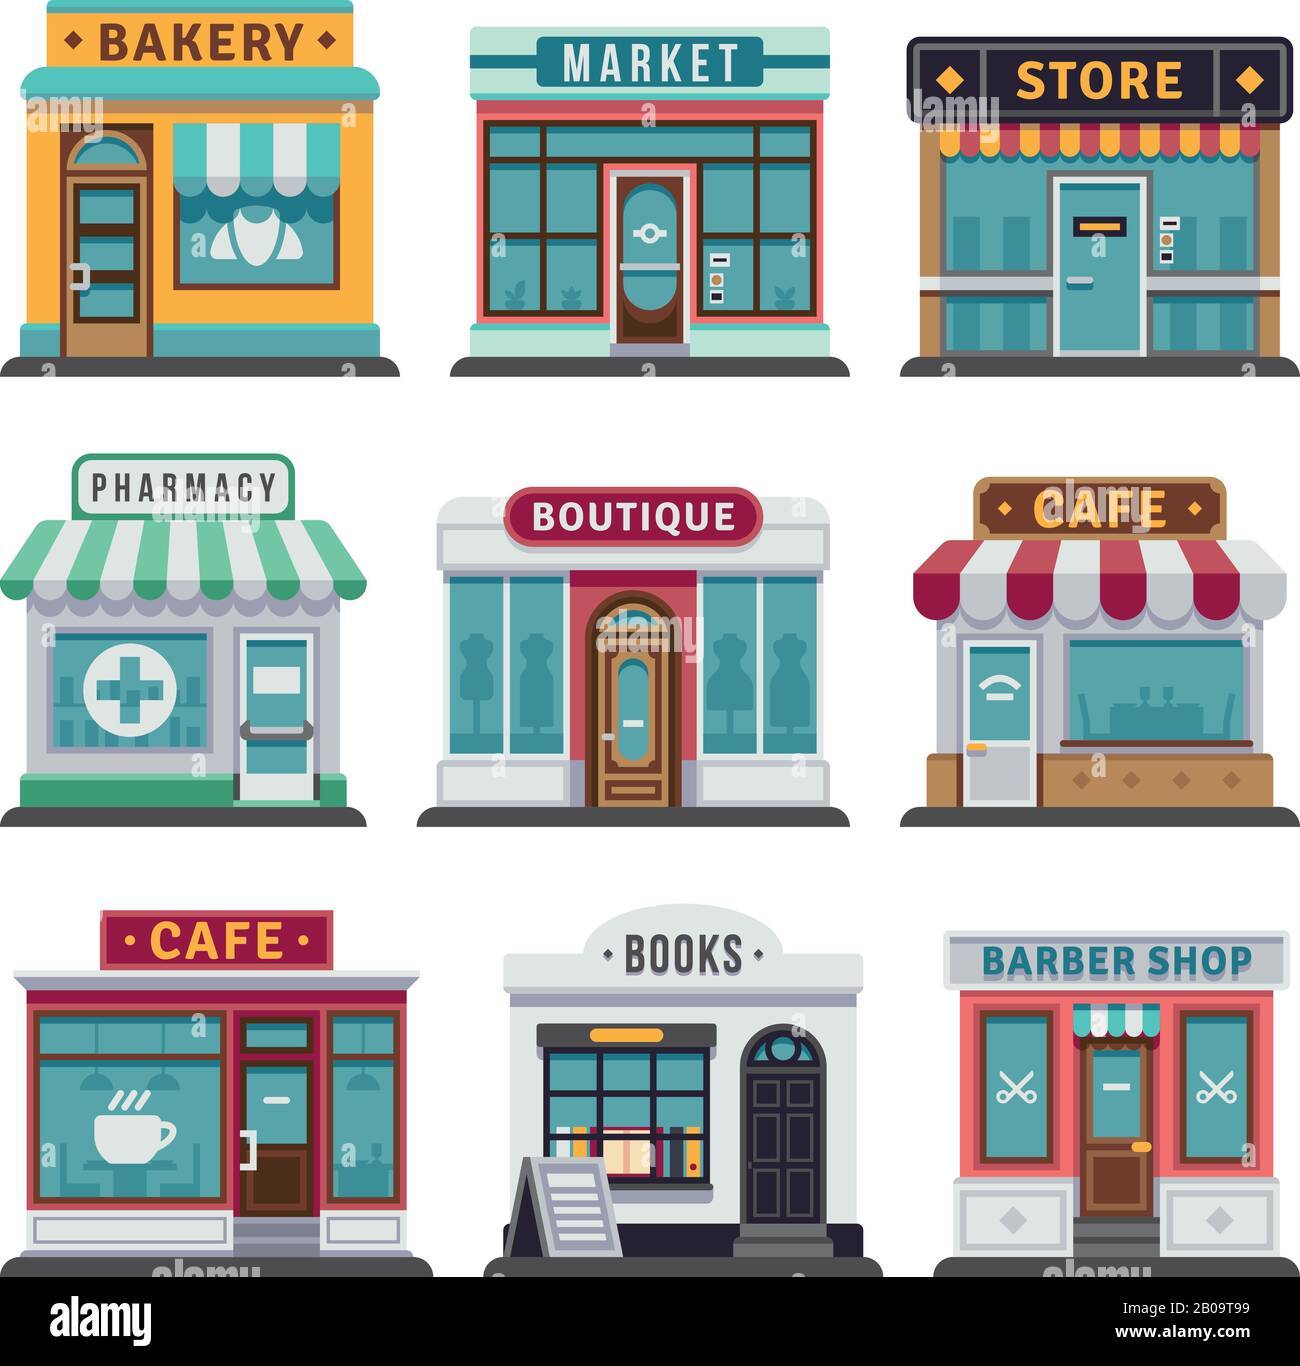 Einzelhandel Stadtgeschäft, Geschäft. Markt und Bäckerei, Café und Boutique-Shop, Vecto barber Shop Illustration Stock Vektor